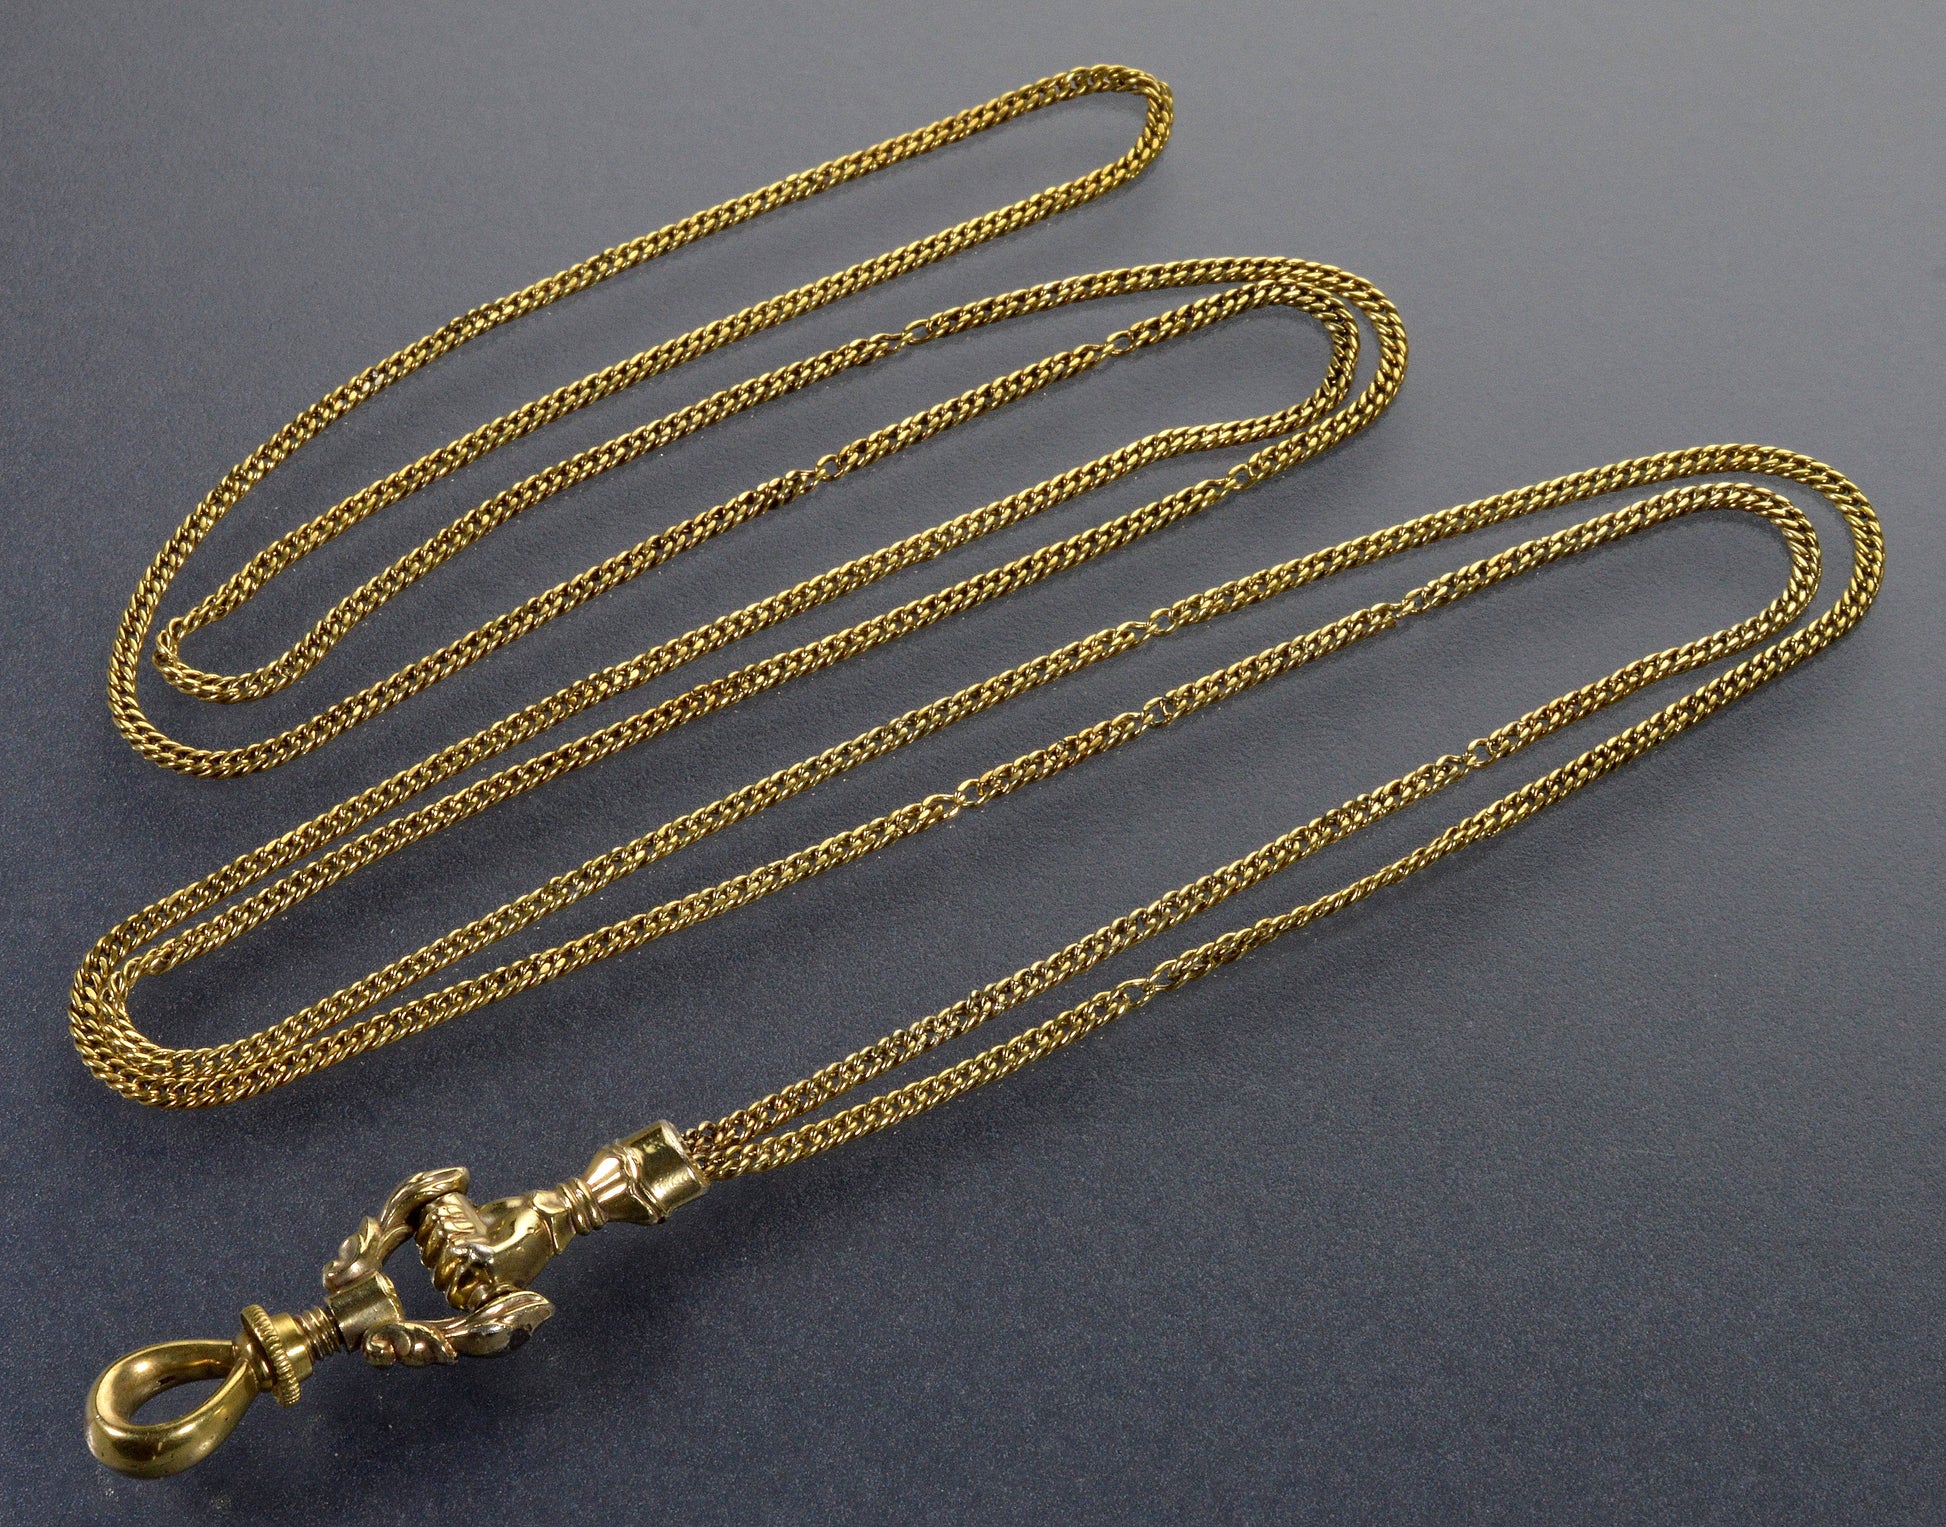 Antique Georgian 10K Gold Necklace Hand Fist Longuard Chain C.1820 003709